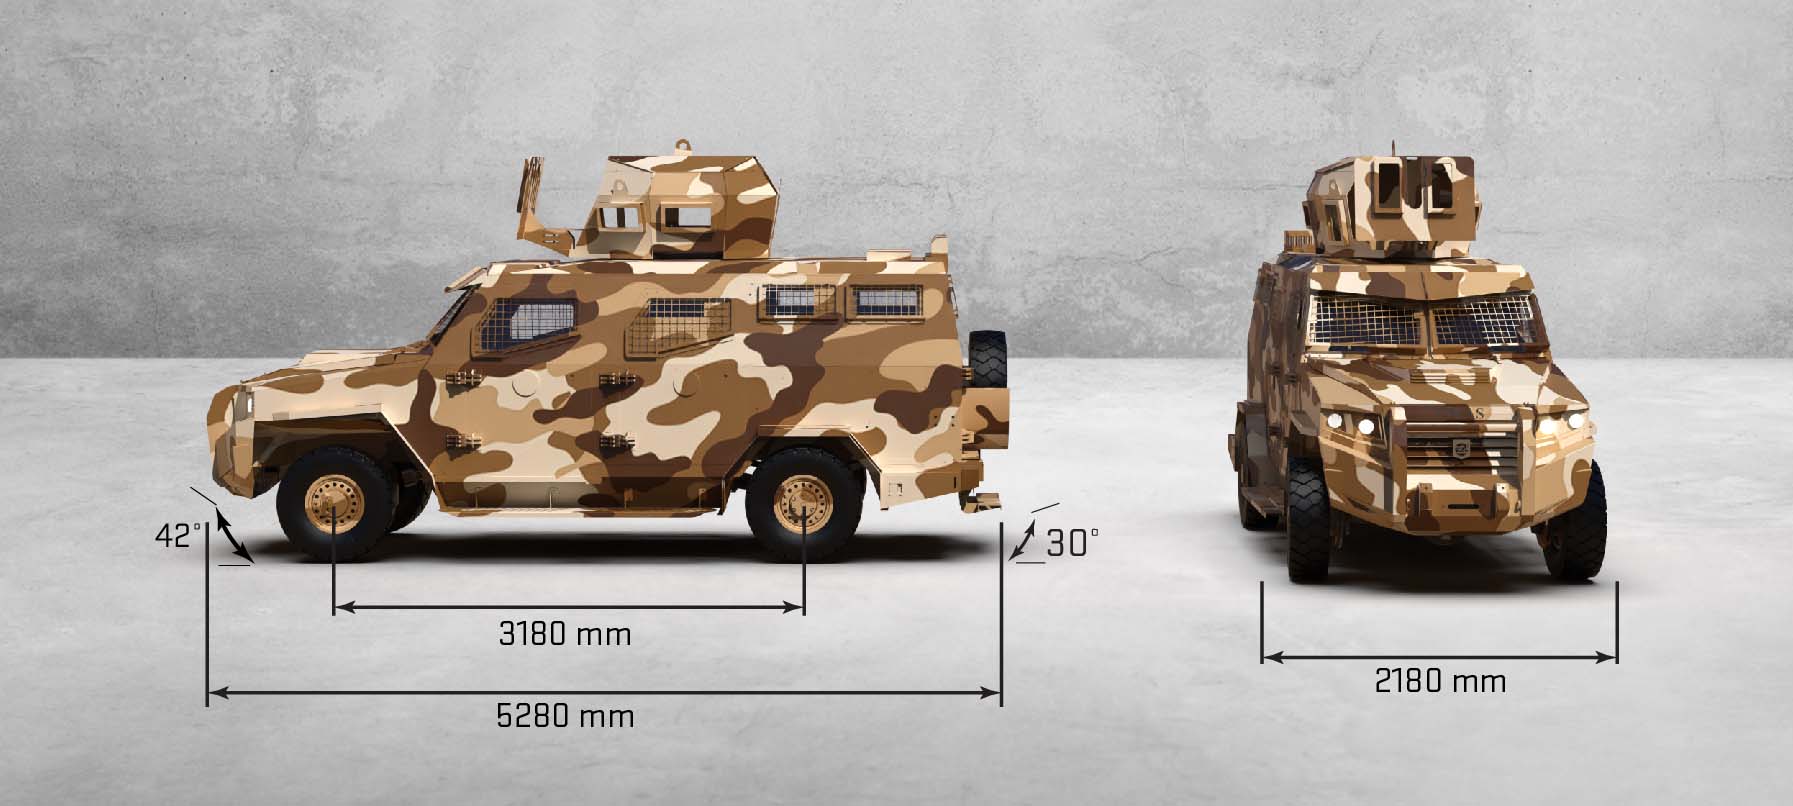 INKAS Titan S Tactical Military Vehicles exterior